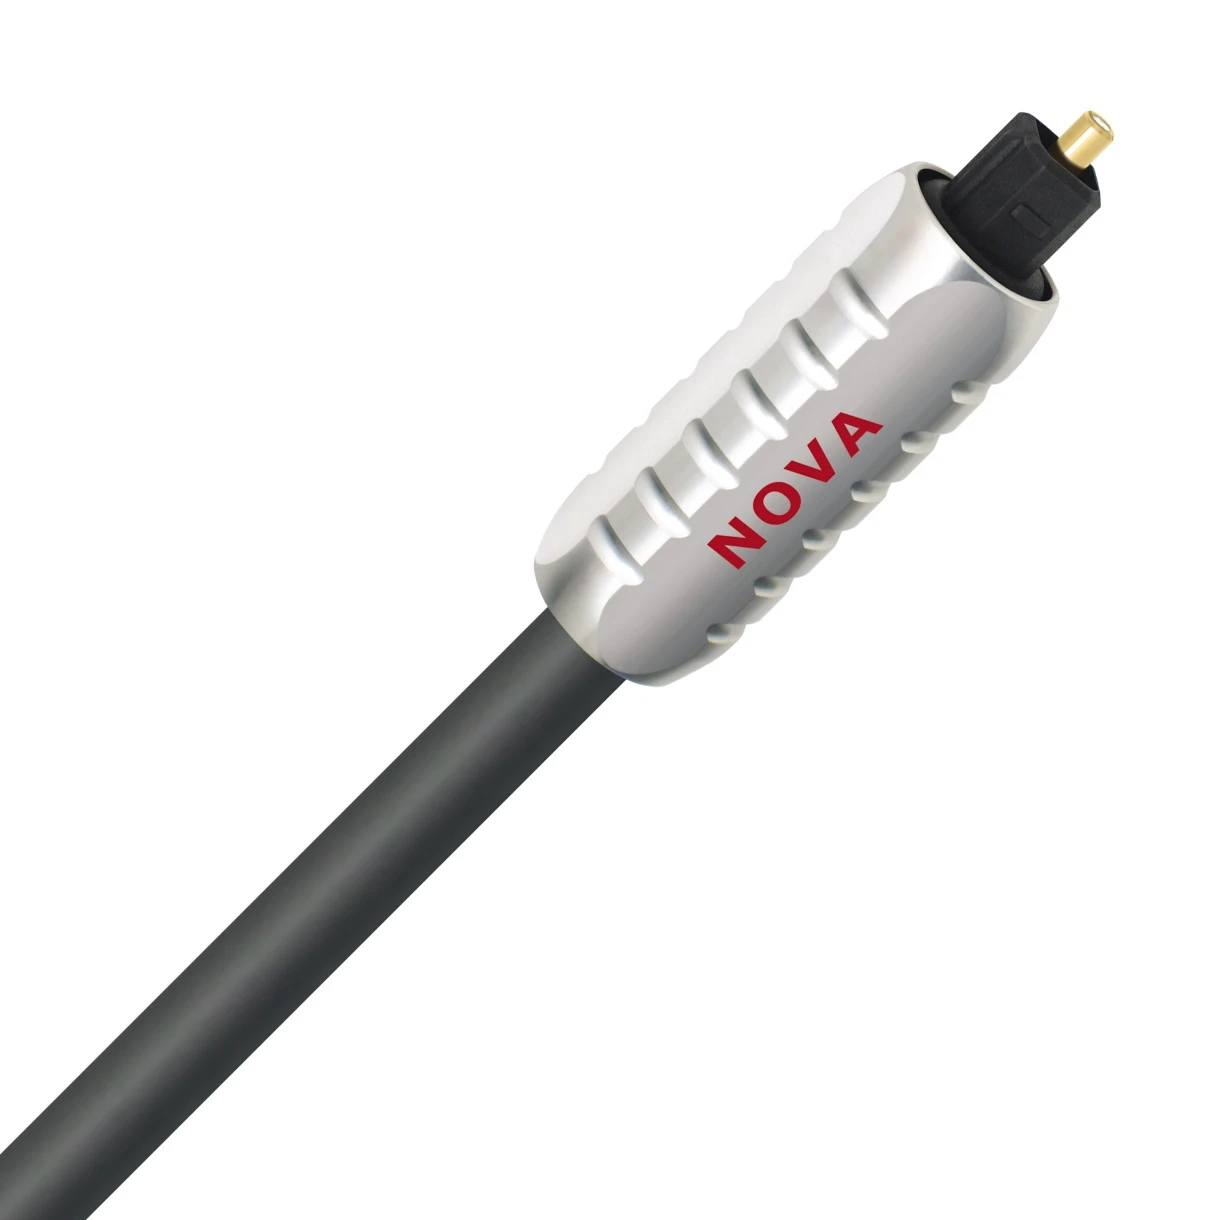 Wireworld-Nova-7-Toslink-Optical-toslink-connector